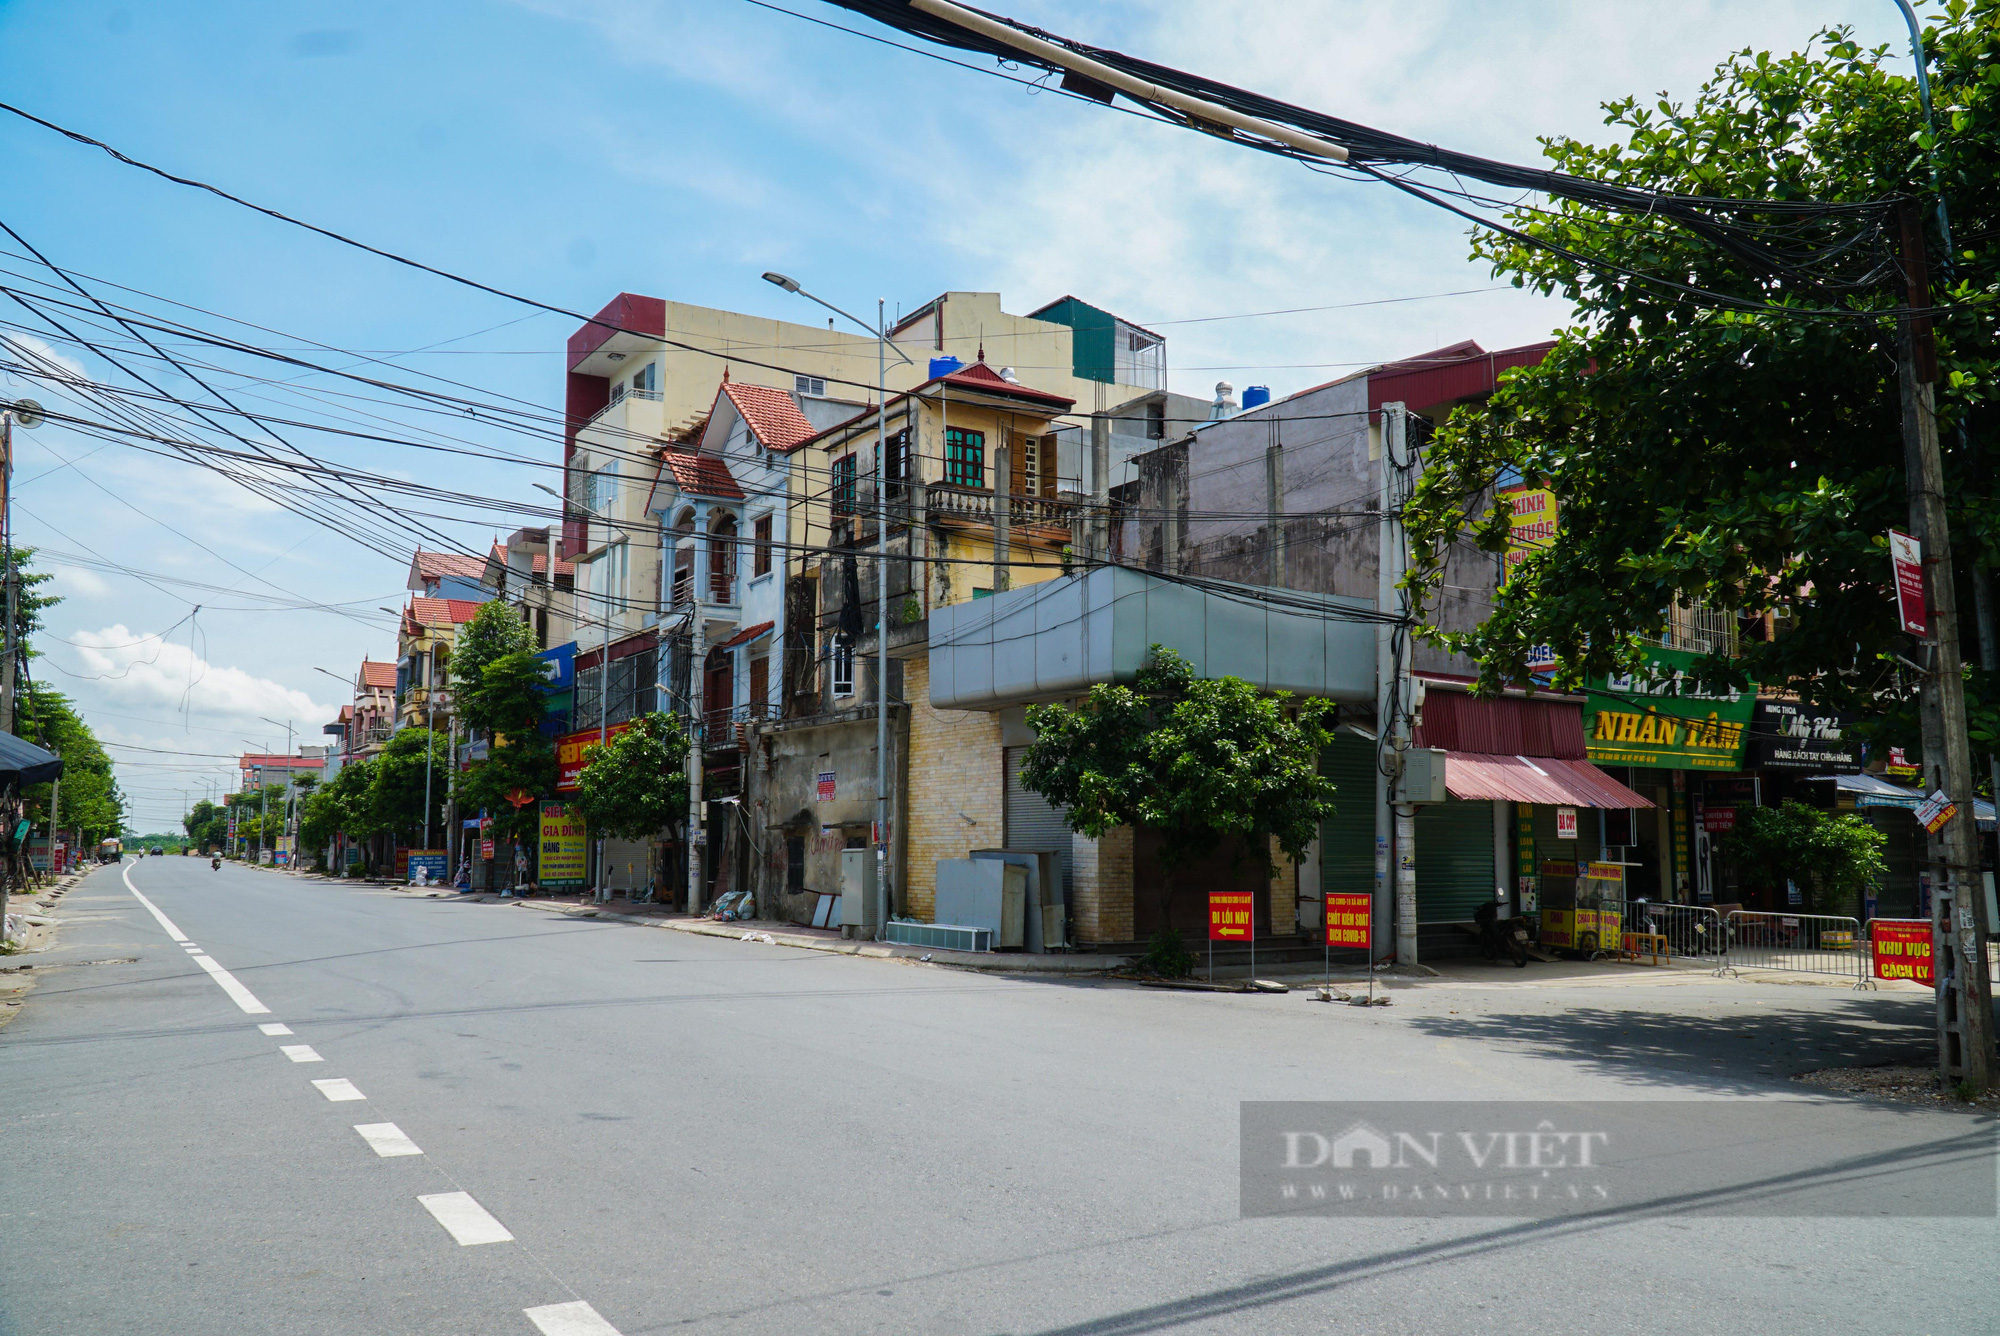 Toàn cảnh 1 thôn hơn 2.000 dân của Hà Nội bị cách ly y tế - Ảnh 12.